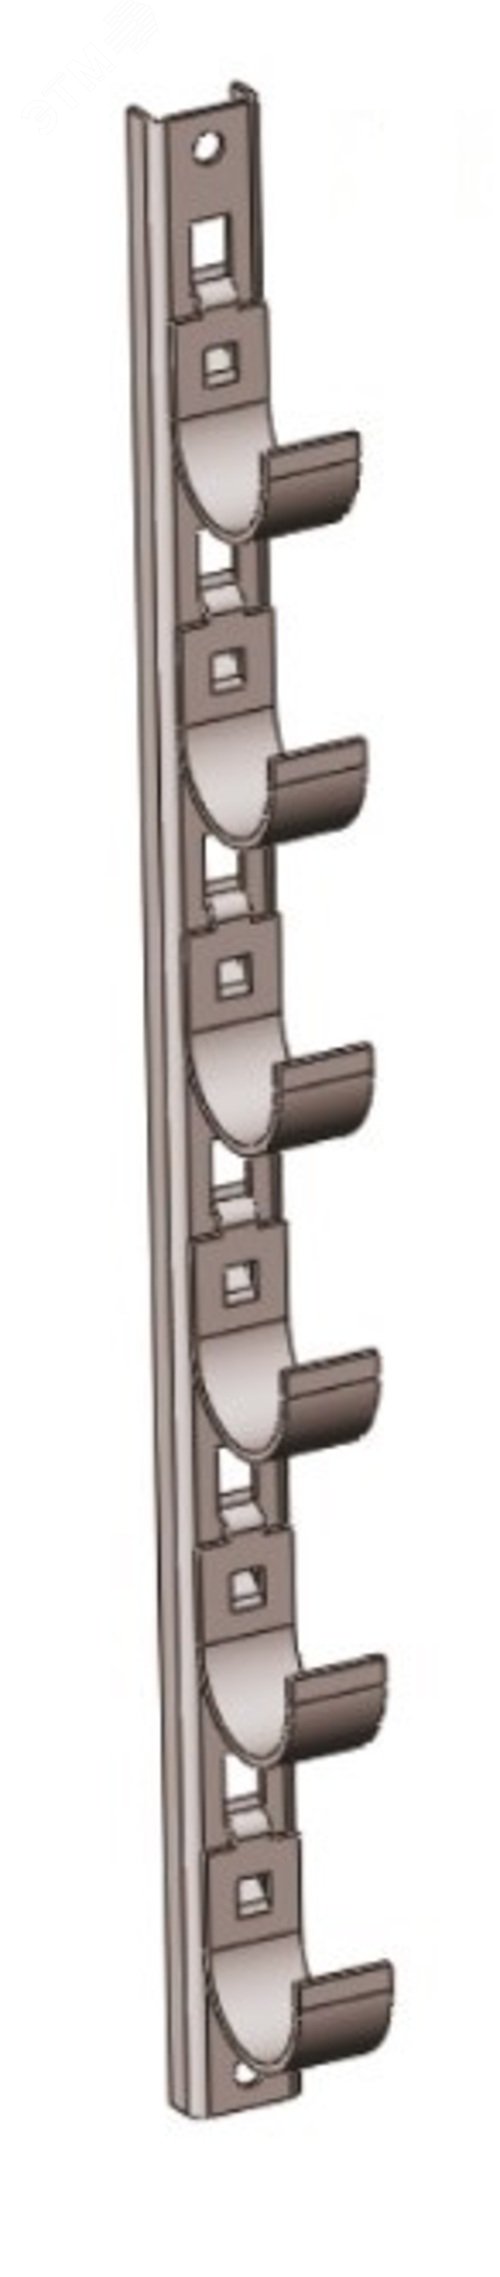 Кронштейн рожковый прямолинейный Р1В4 с 4 рожками, без покрытия, S3,0, L565 П0000014812 Завод ЭМИ Курган